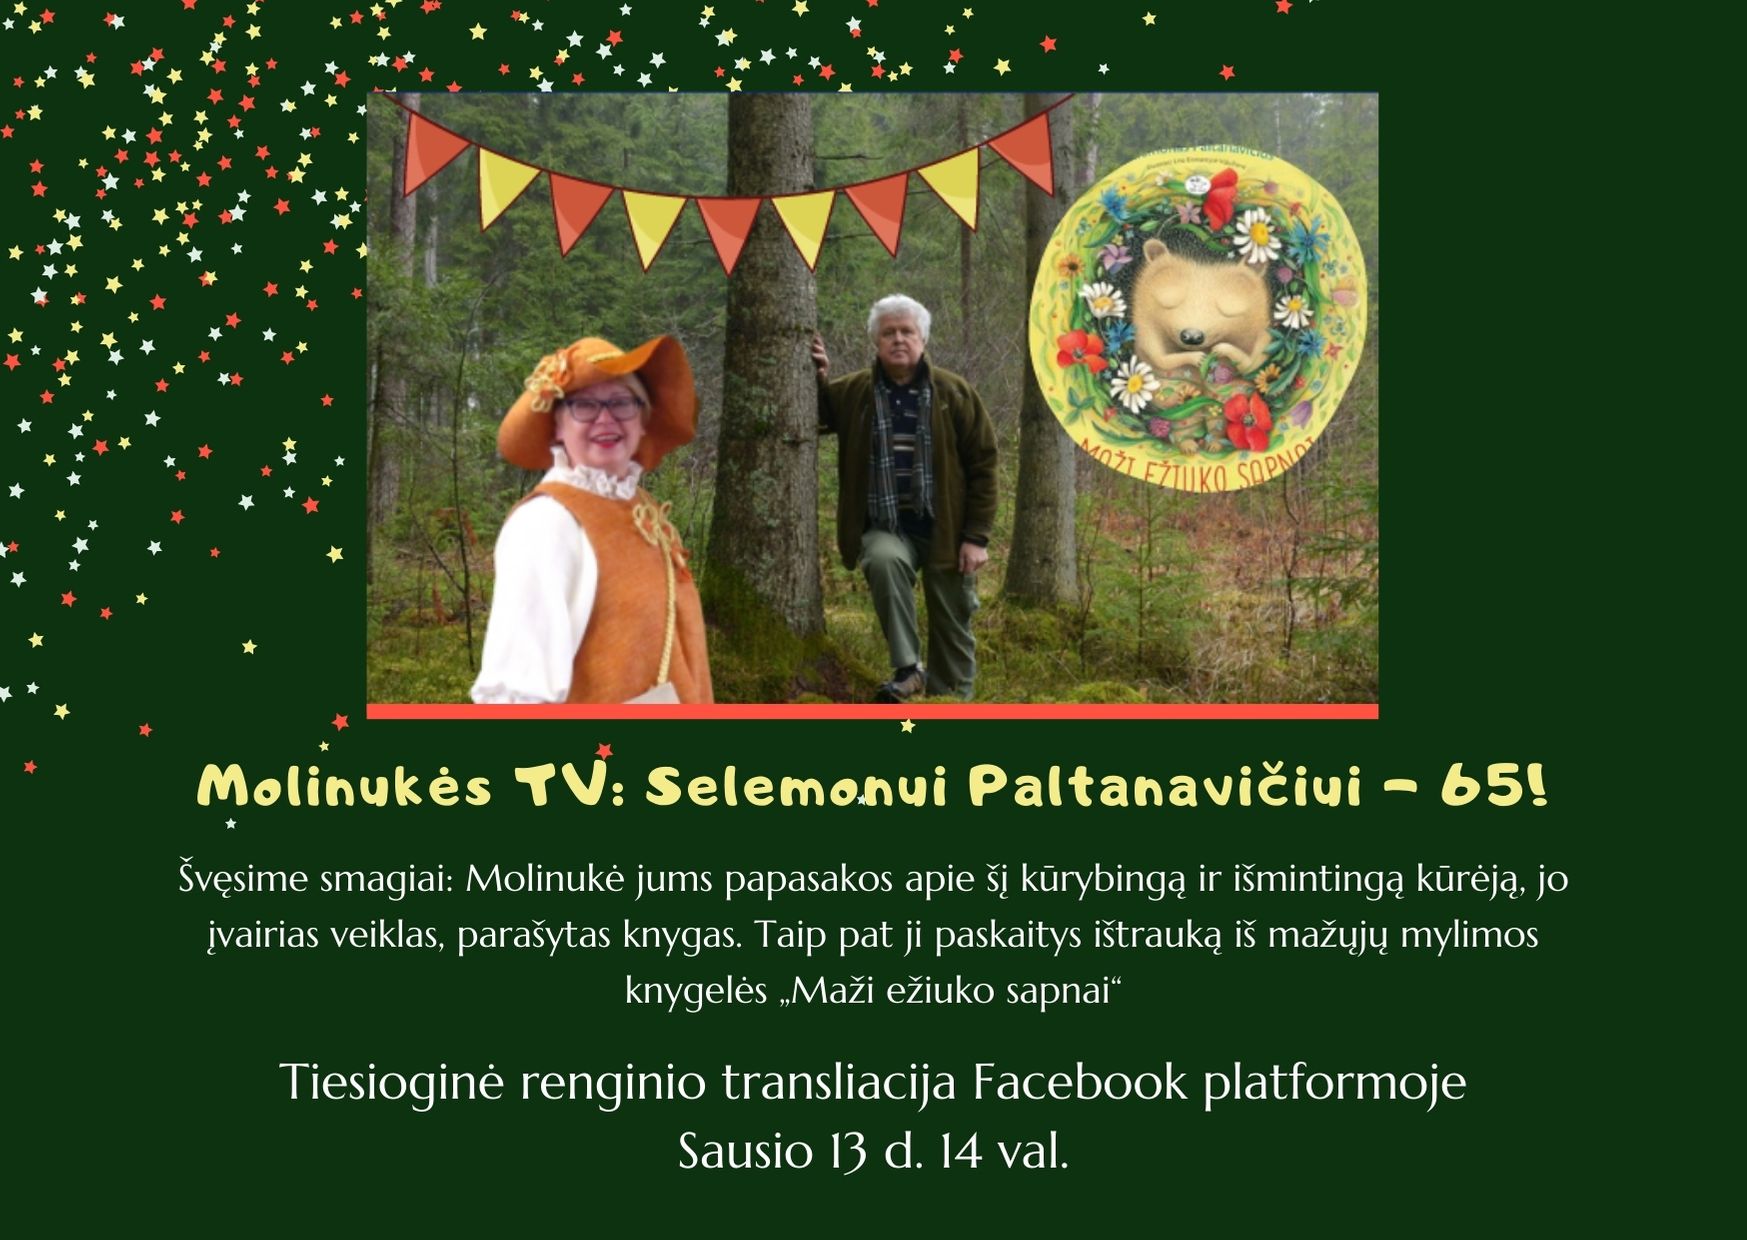 Molinukės TV: Selemonui Paltanavičiui - 65!